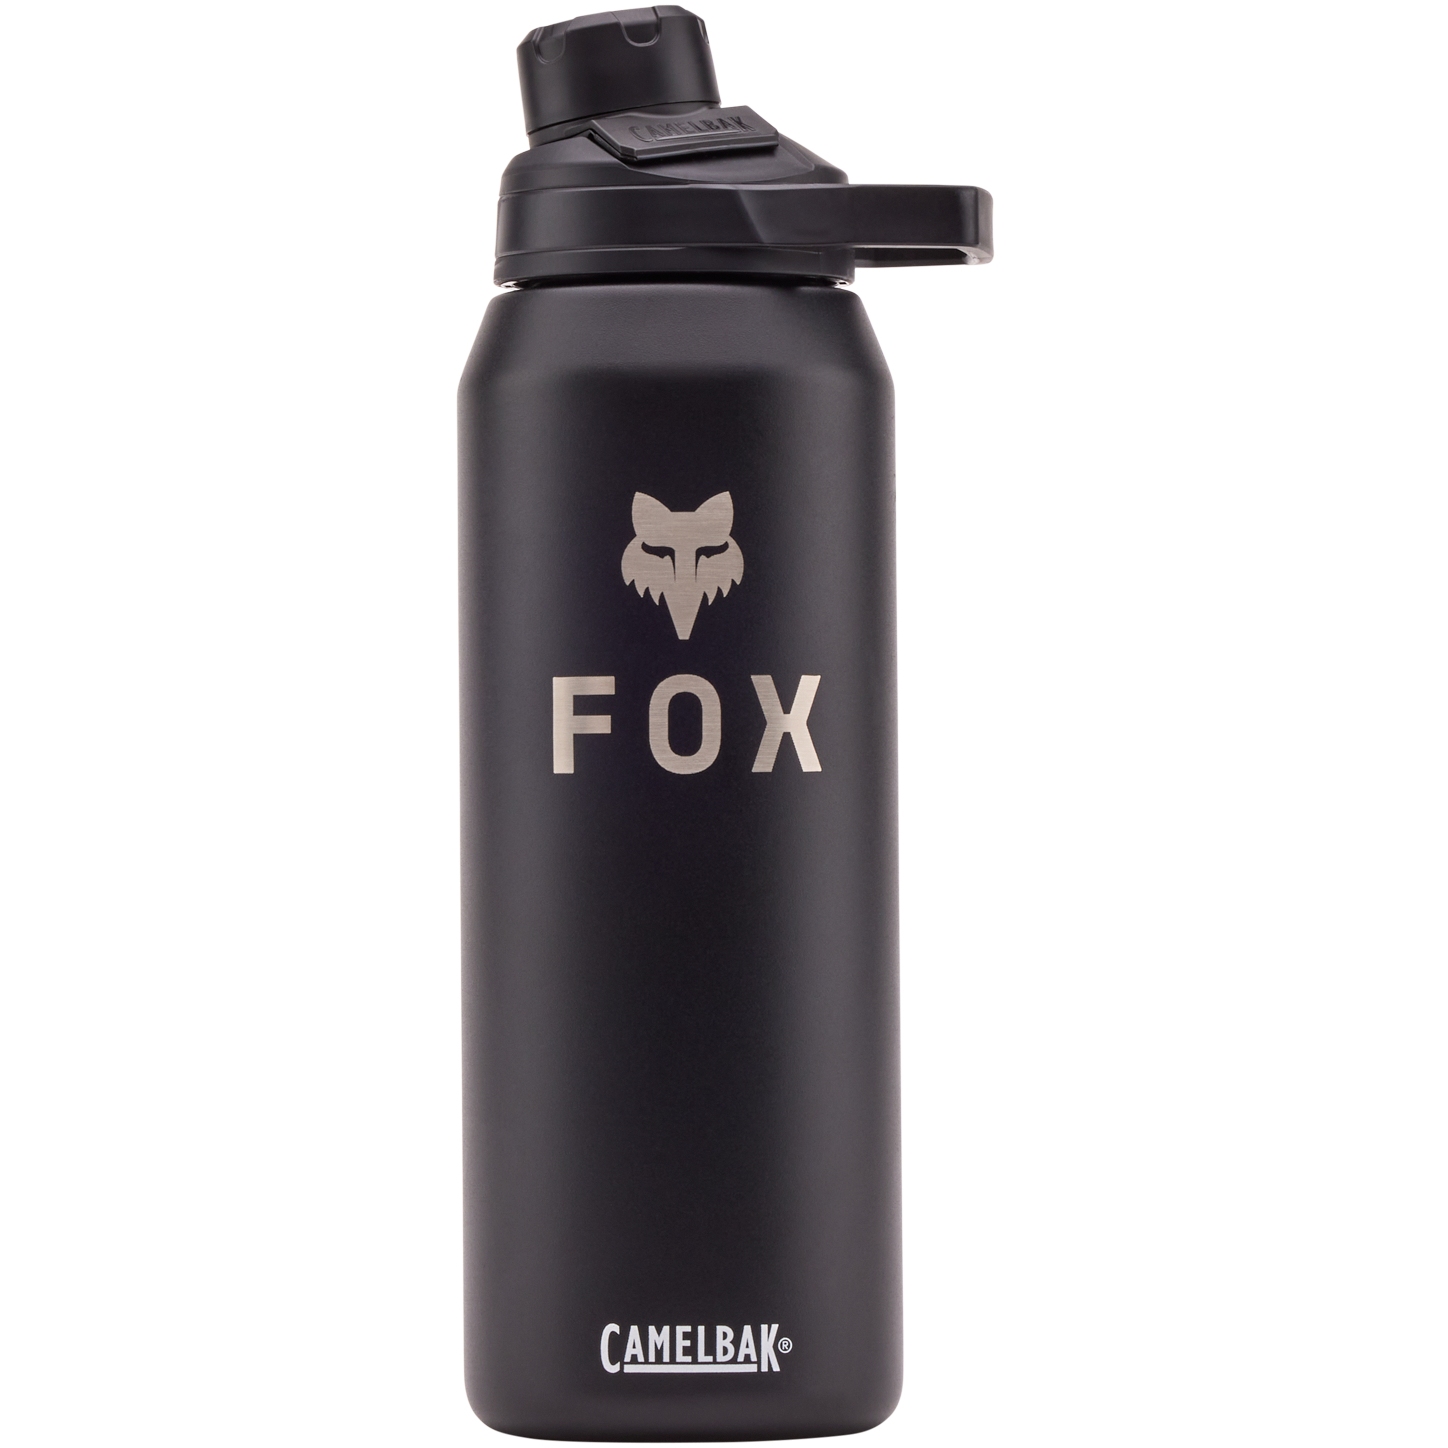 Produktbild von FOX X Camelbak 950ml / 32 Oz Trinkflasche - schwarz